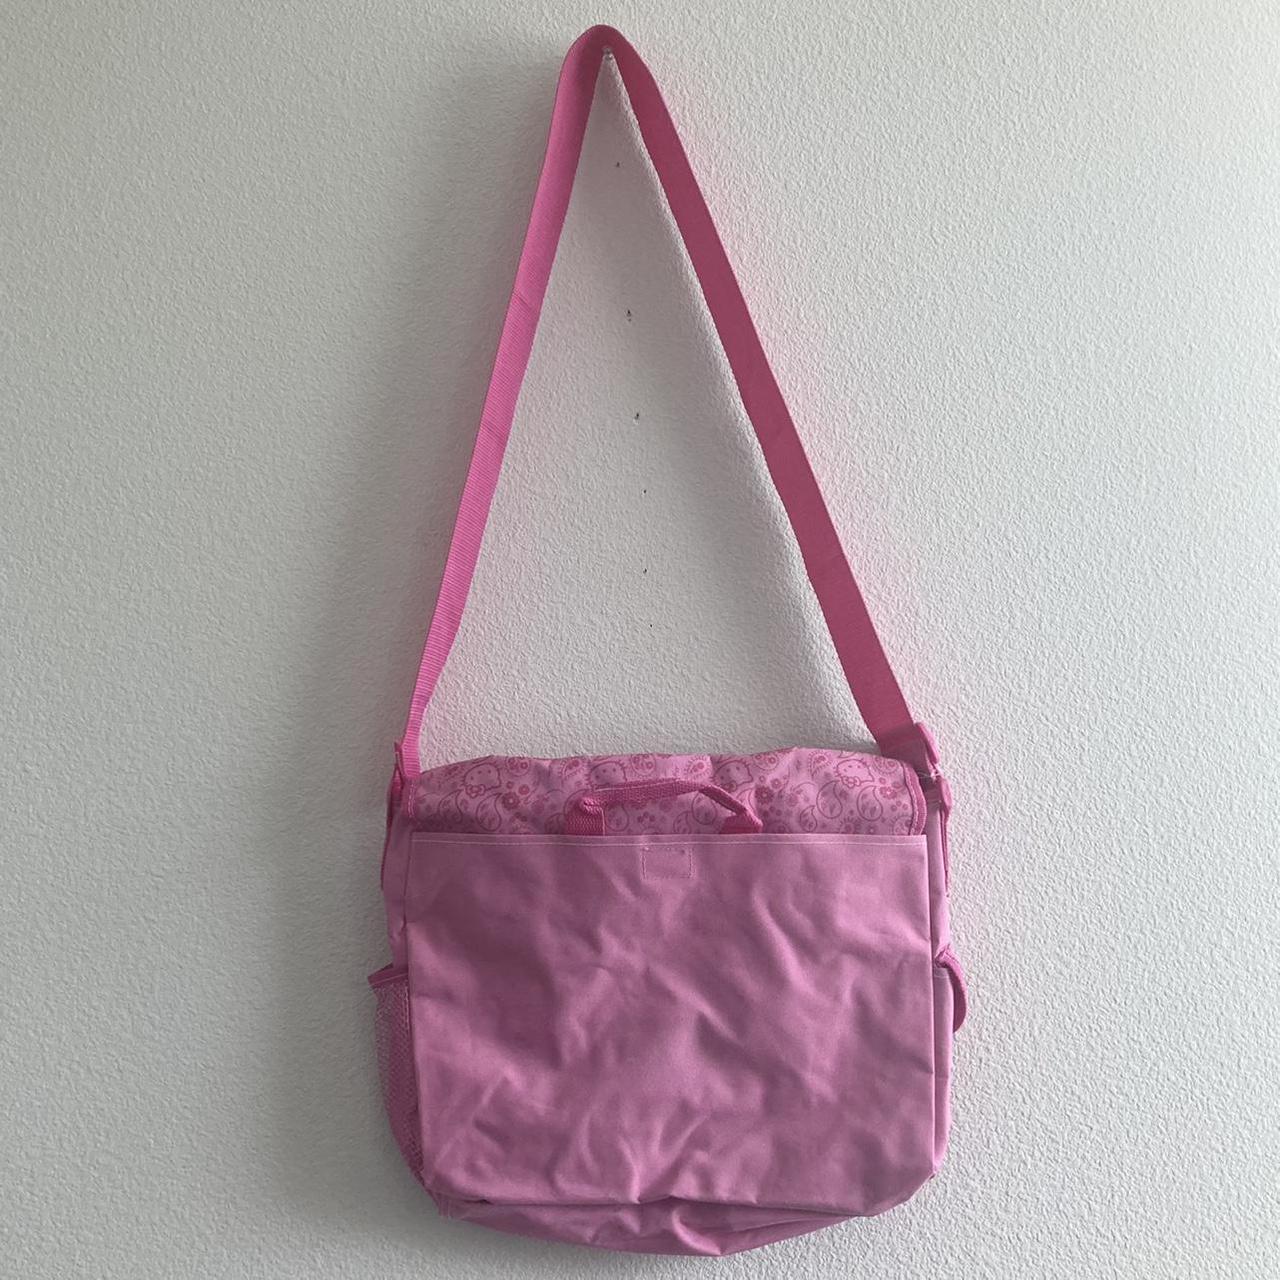 Hello Kitty messenger bag 💘 Super duper adorable - Depop